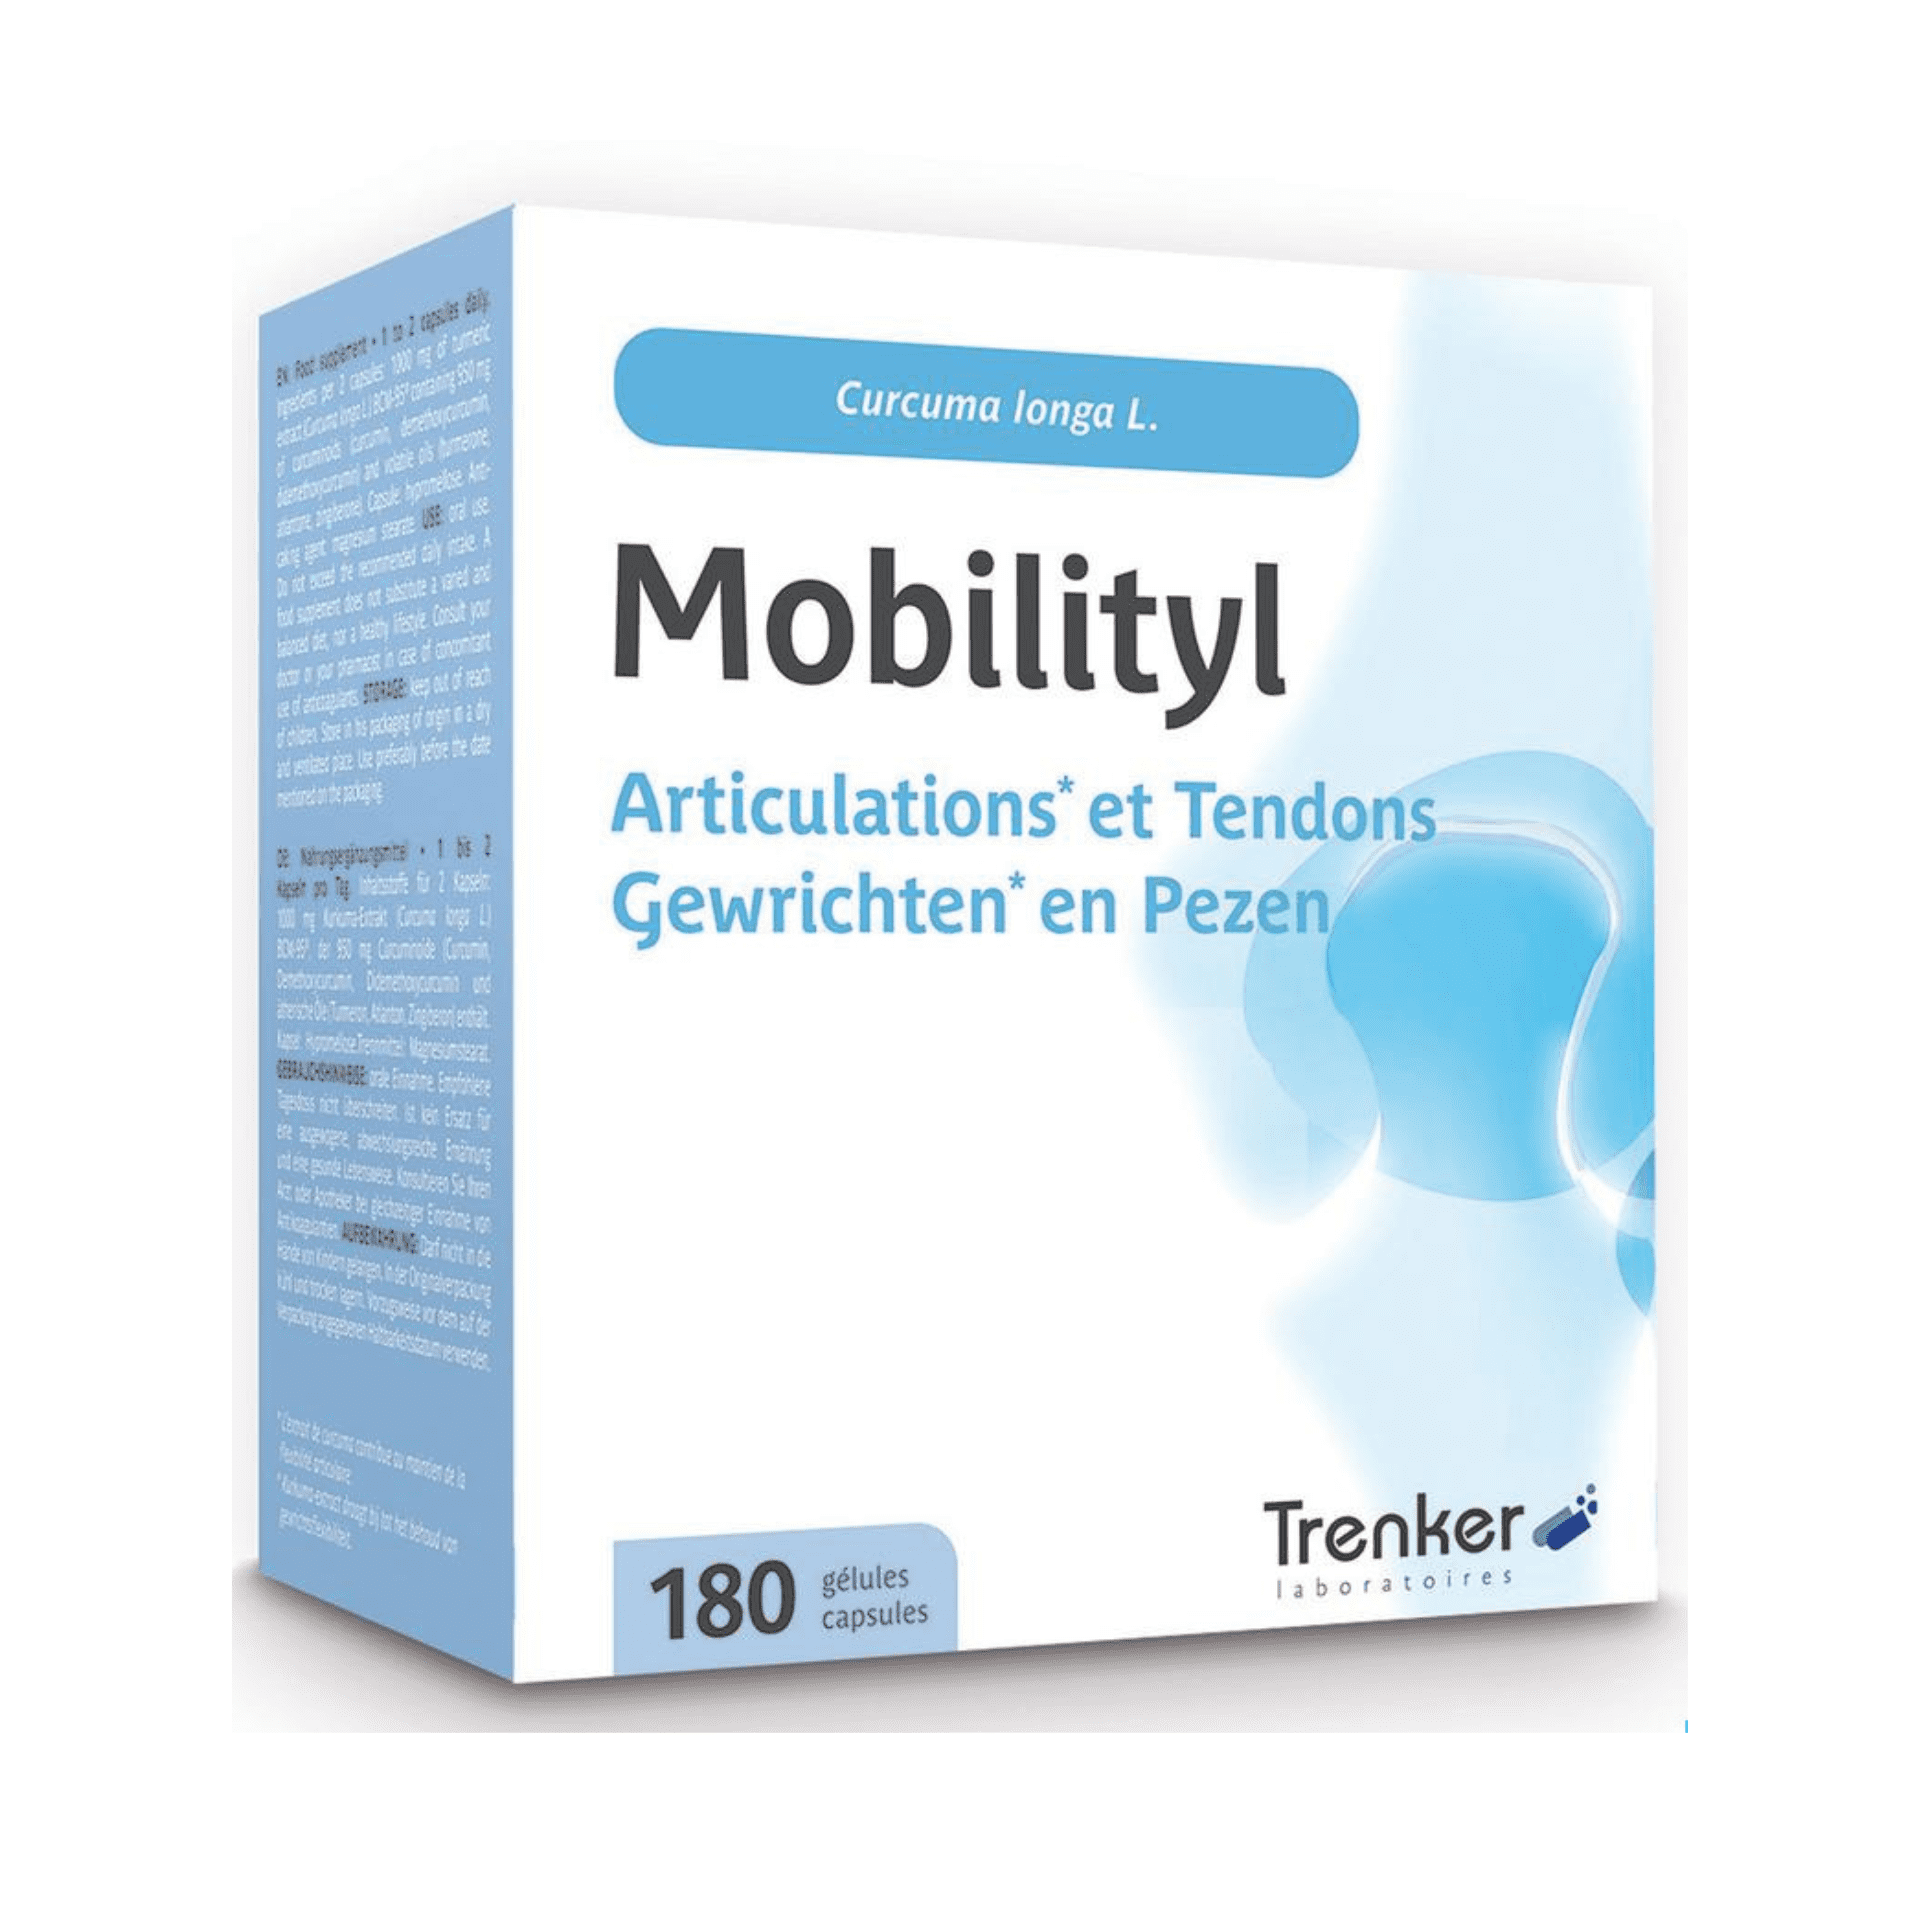 Trenker Mobilityl